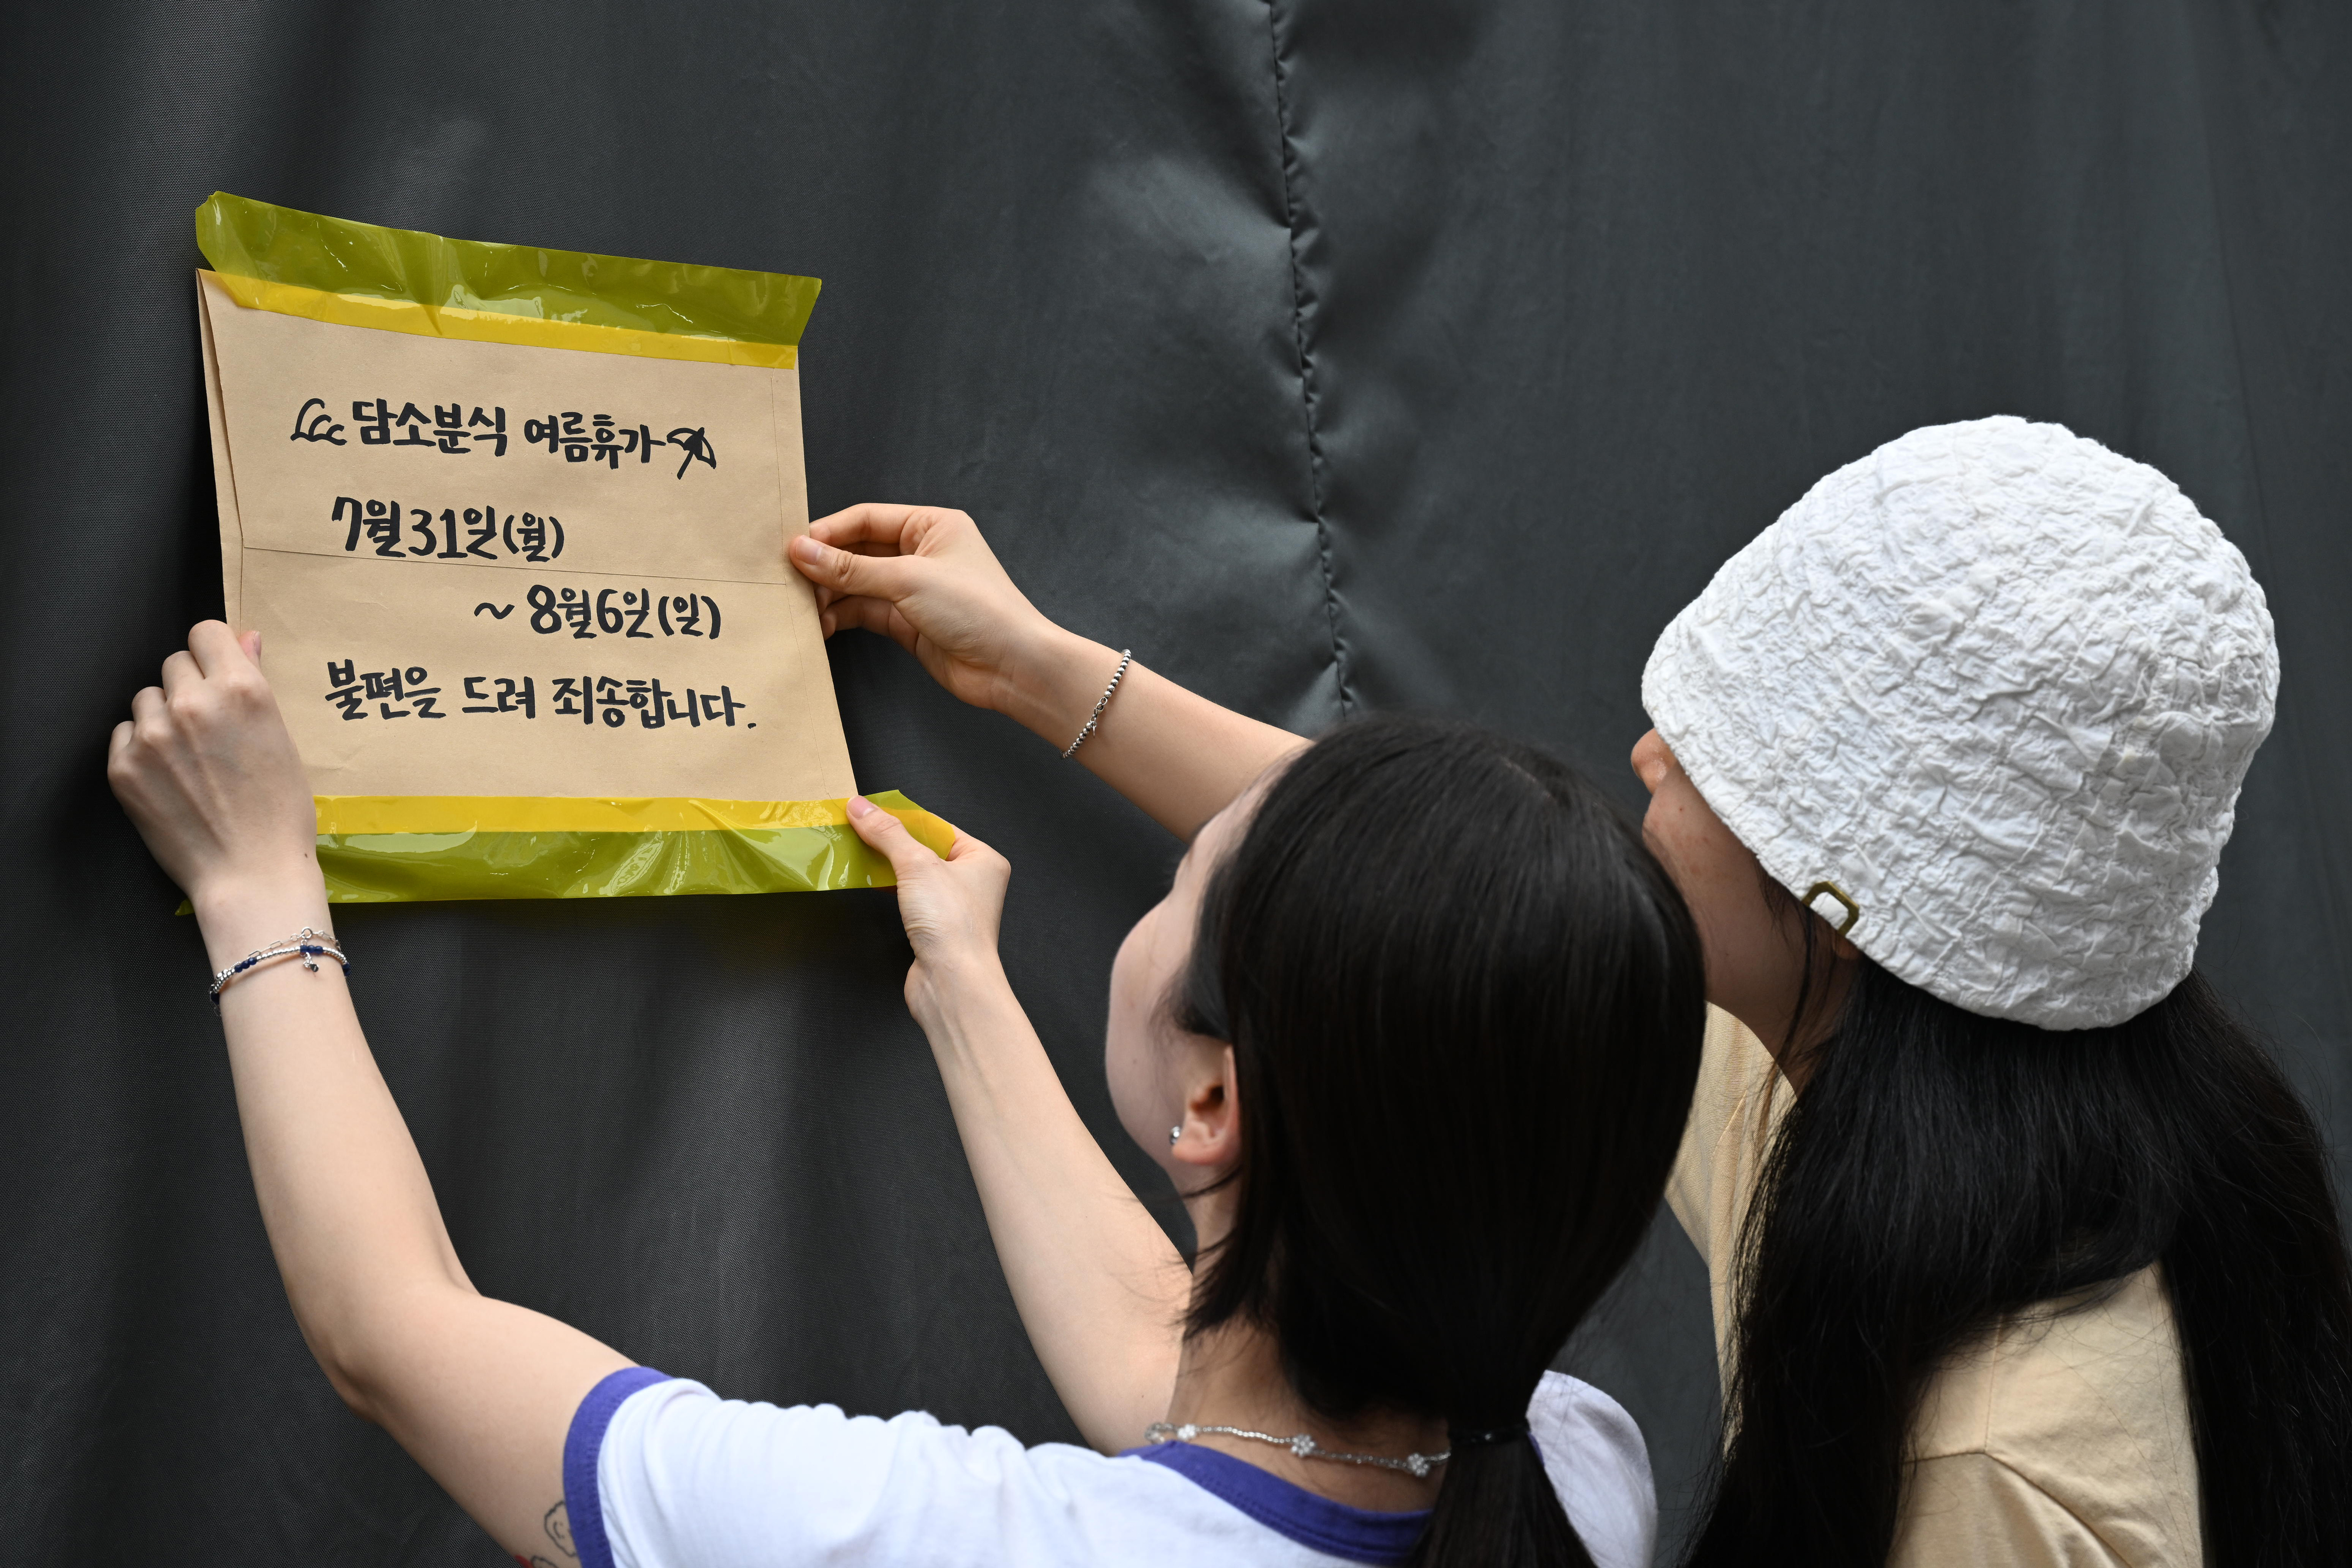 지난달 31일 오후 서울 중구 남대문시장에 한 매장 주인이 여름 휴가를 알리는 안내문이 붙이고 있다. 도준석 기자